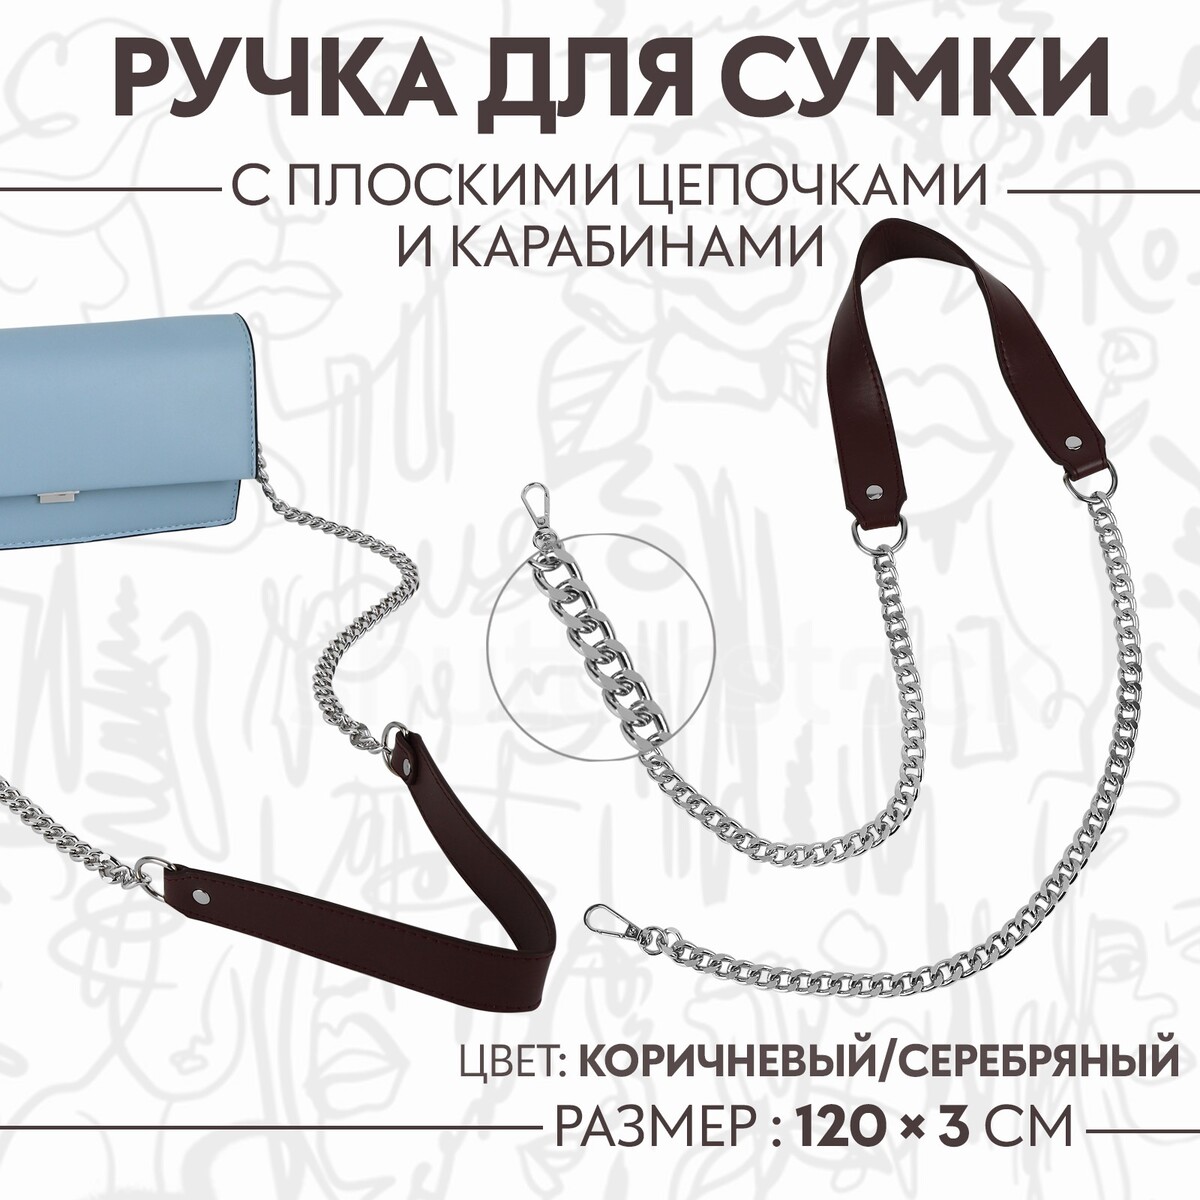 Ручка для сумки, с плоскими цепочками и карабинами, 120 × 3 см, цвет коричневый/серебряный ручка для сумки с карабинами 35 ± 1 см × 3 5 см серебряный